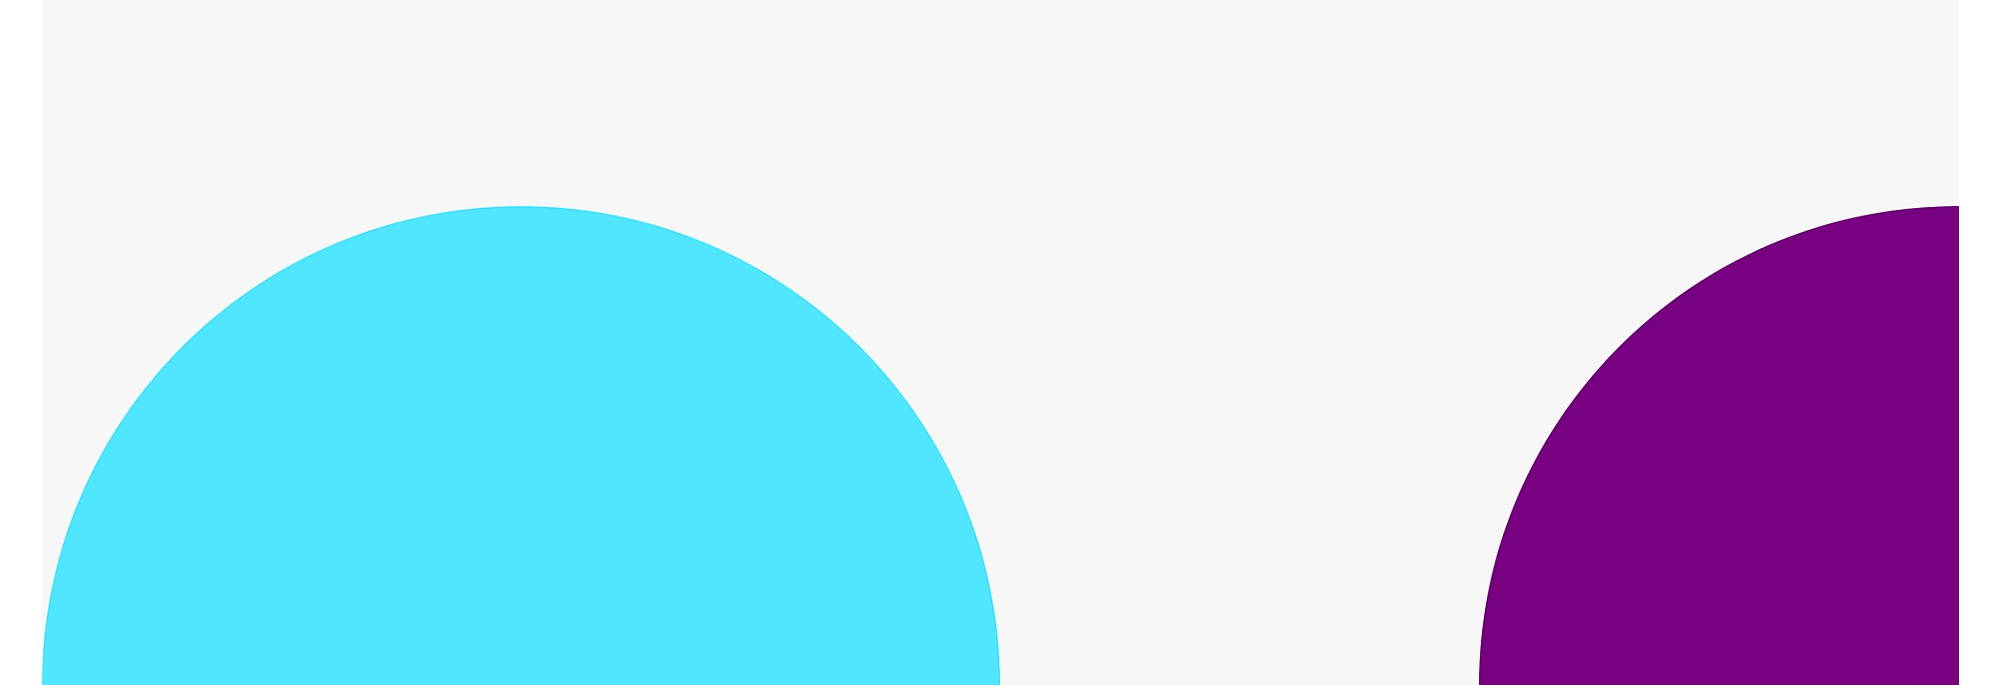 Dos grandes círculos parcialmente superpuestos con un círculo azul a la izquierda y un círculo púrpura a la derecha 